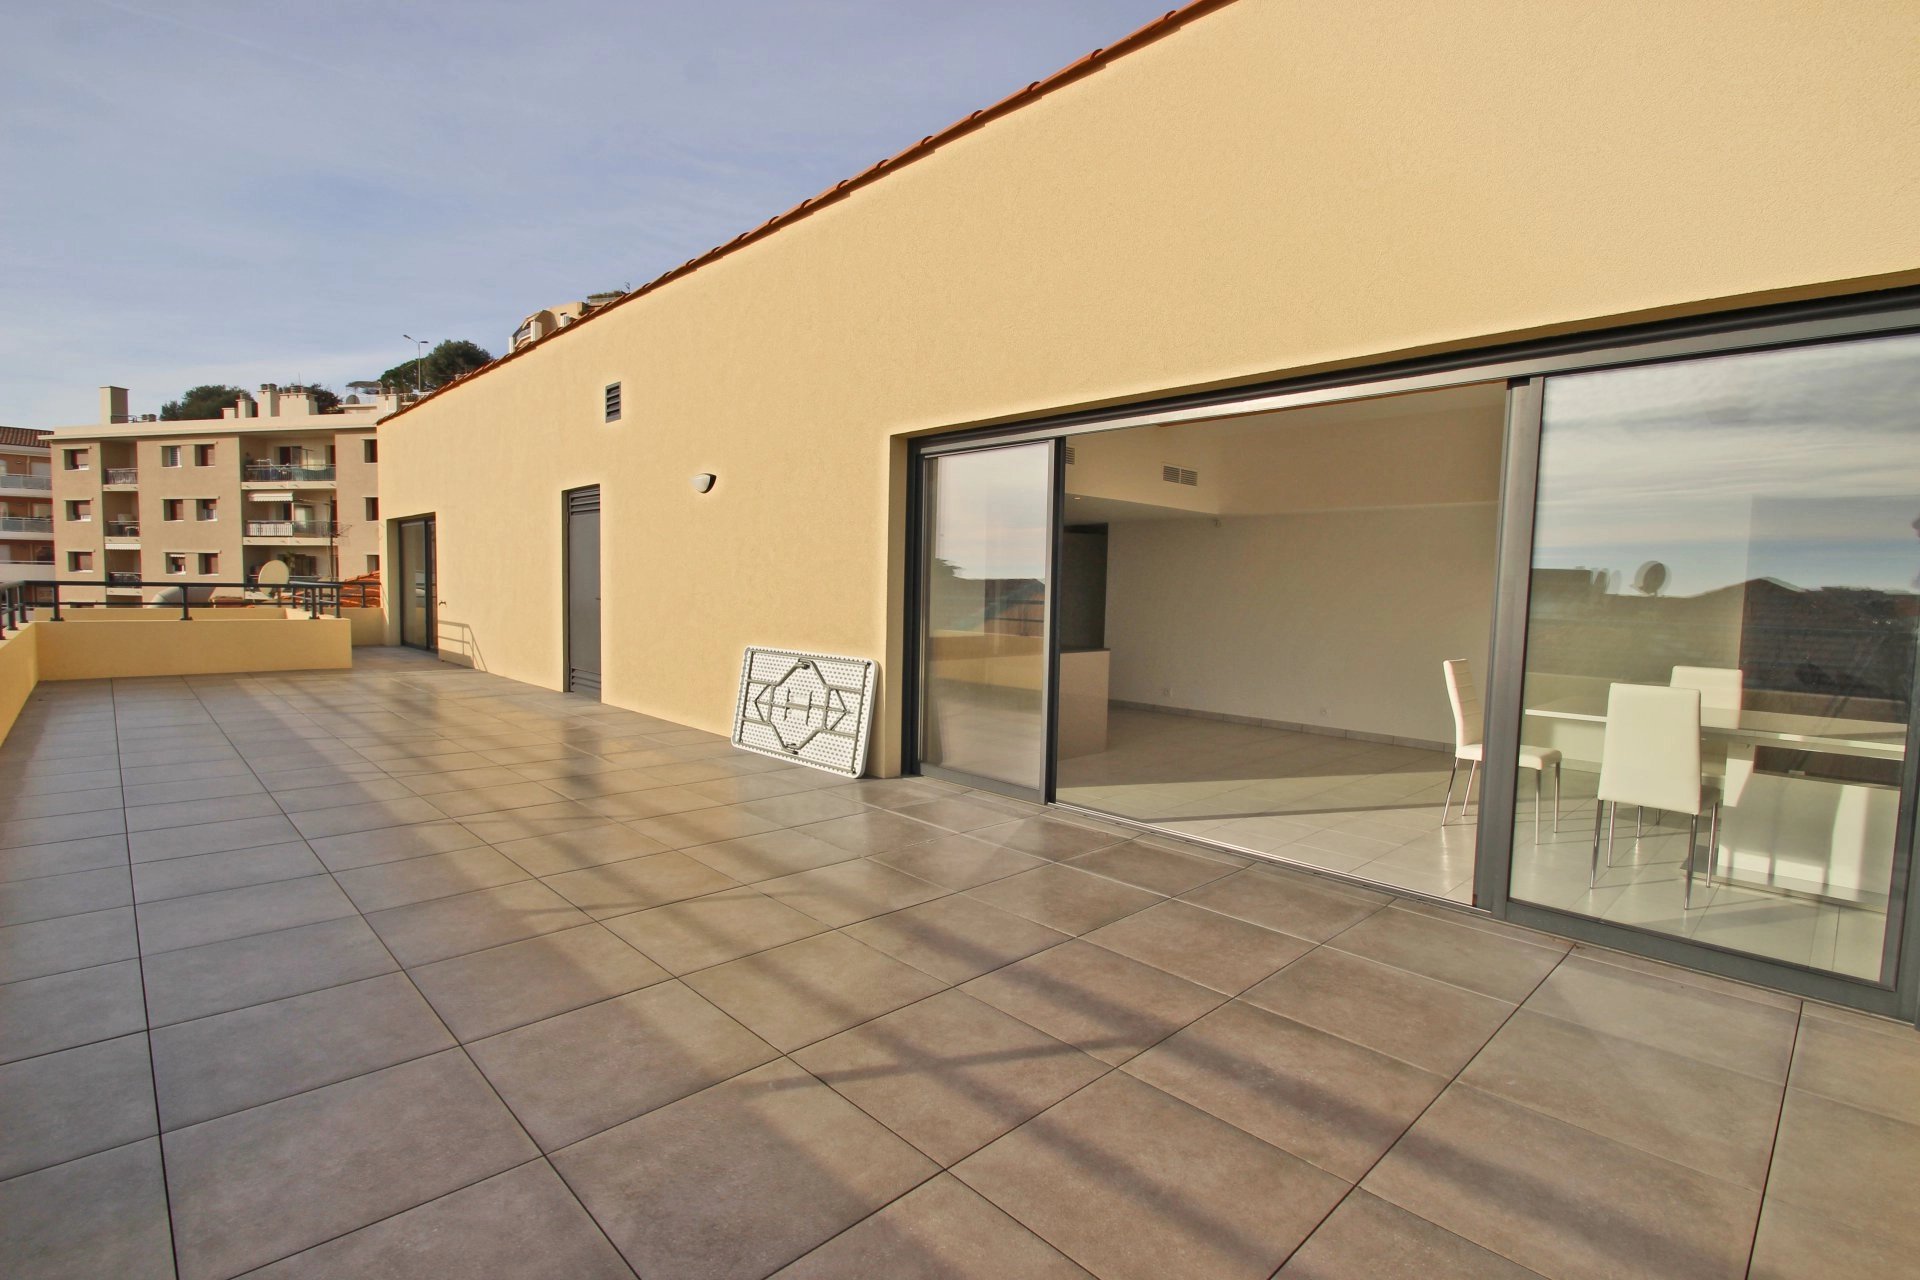 CAP D'AIL "MONACO" | PENTHOUSE 157sqm | 4 Bedrooms | 65sqm Terrace | 2 Garages